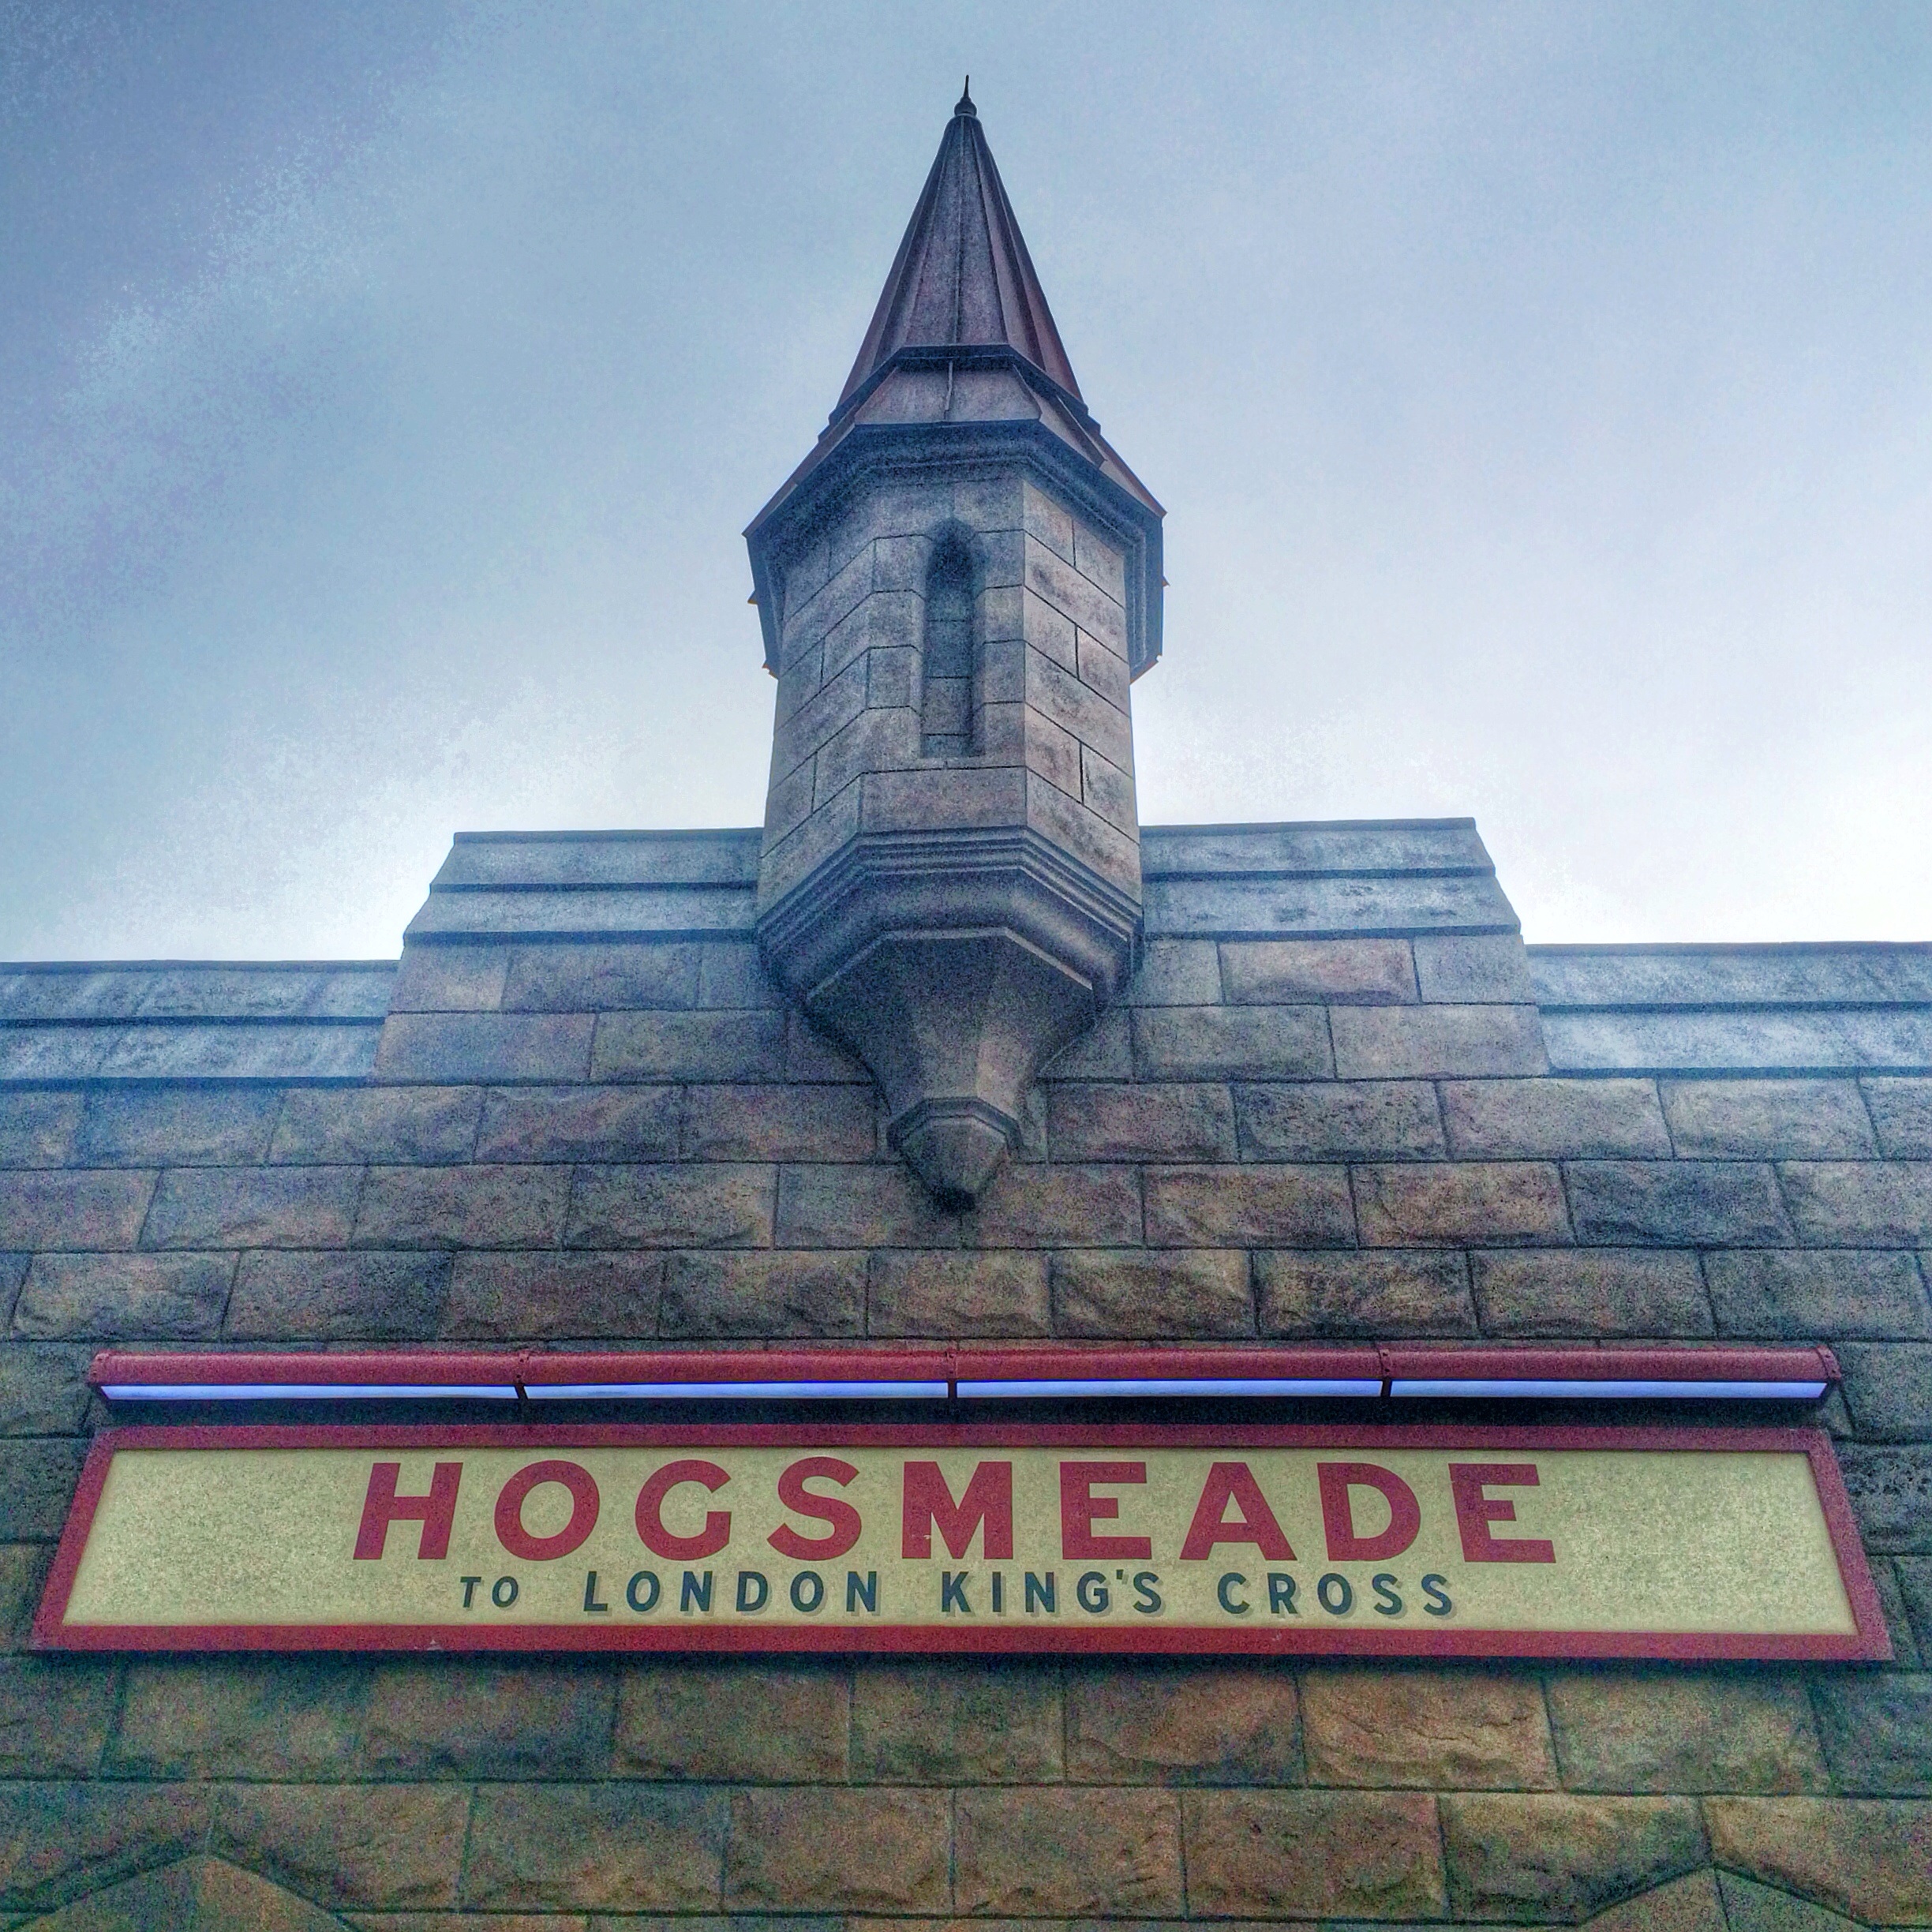 Hogsmeade station